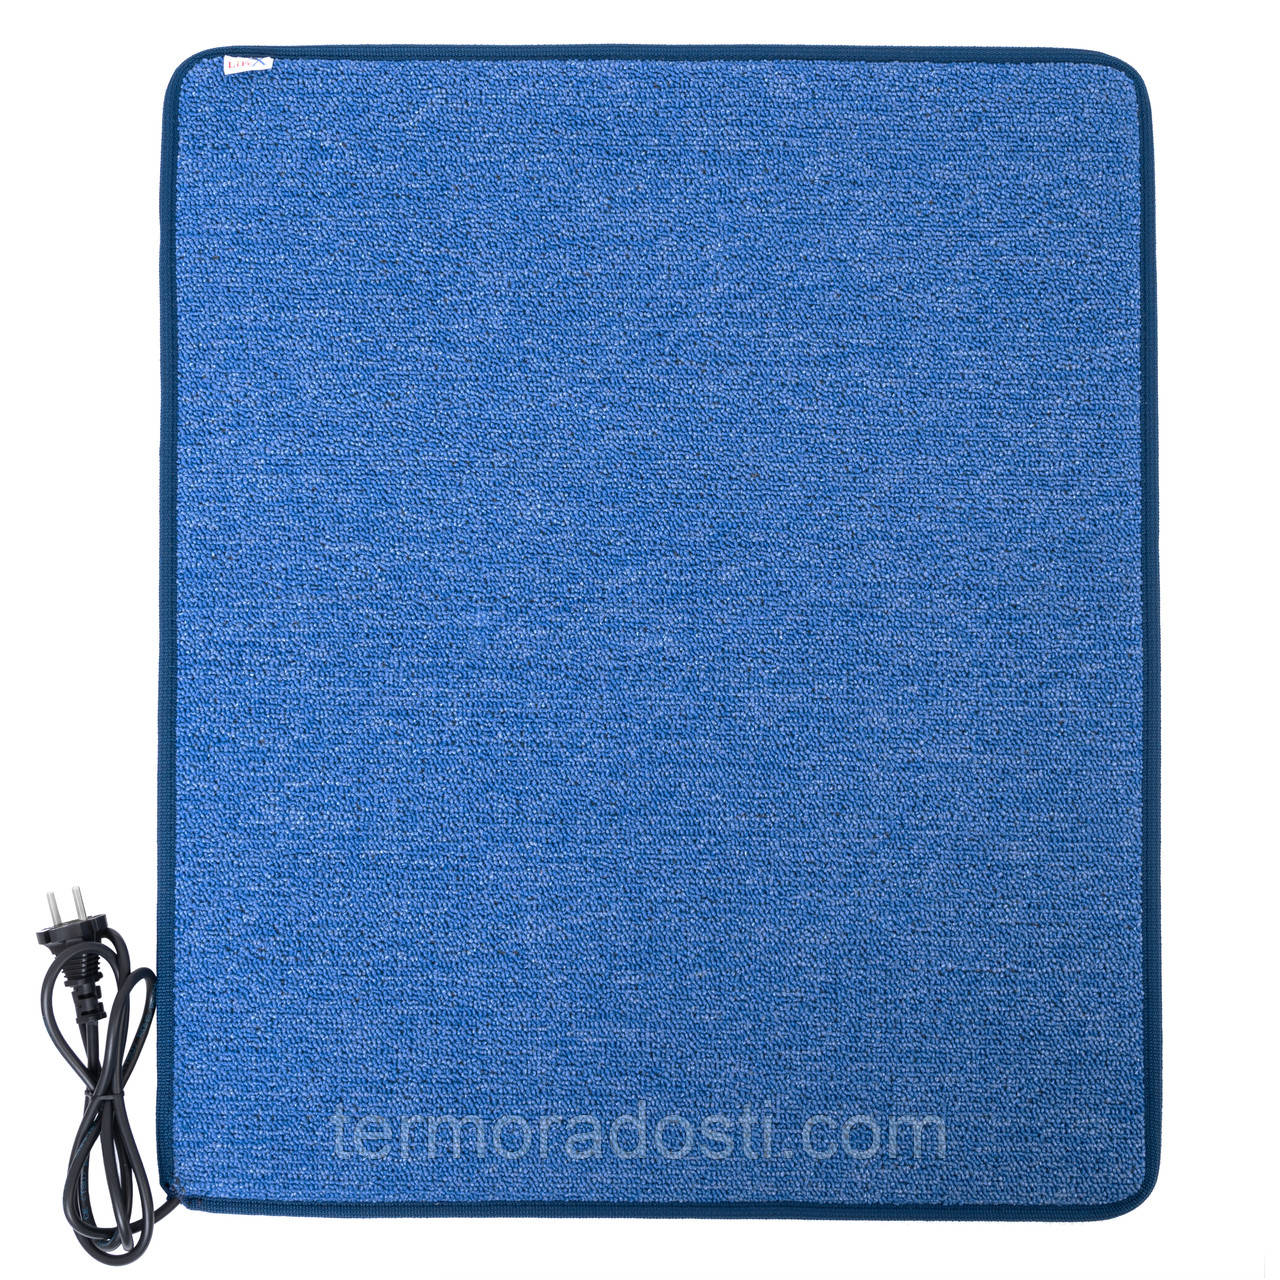 Теплий килимок з підігрівом LIFEX WC 50x50 Синій  | Електрокилим для ніг Warm Carpet